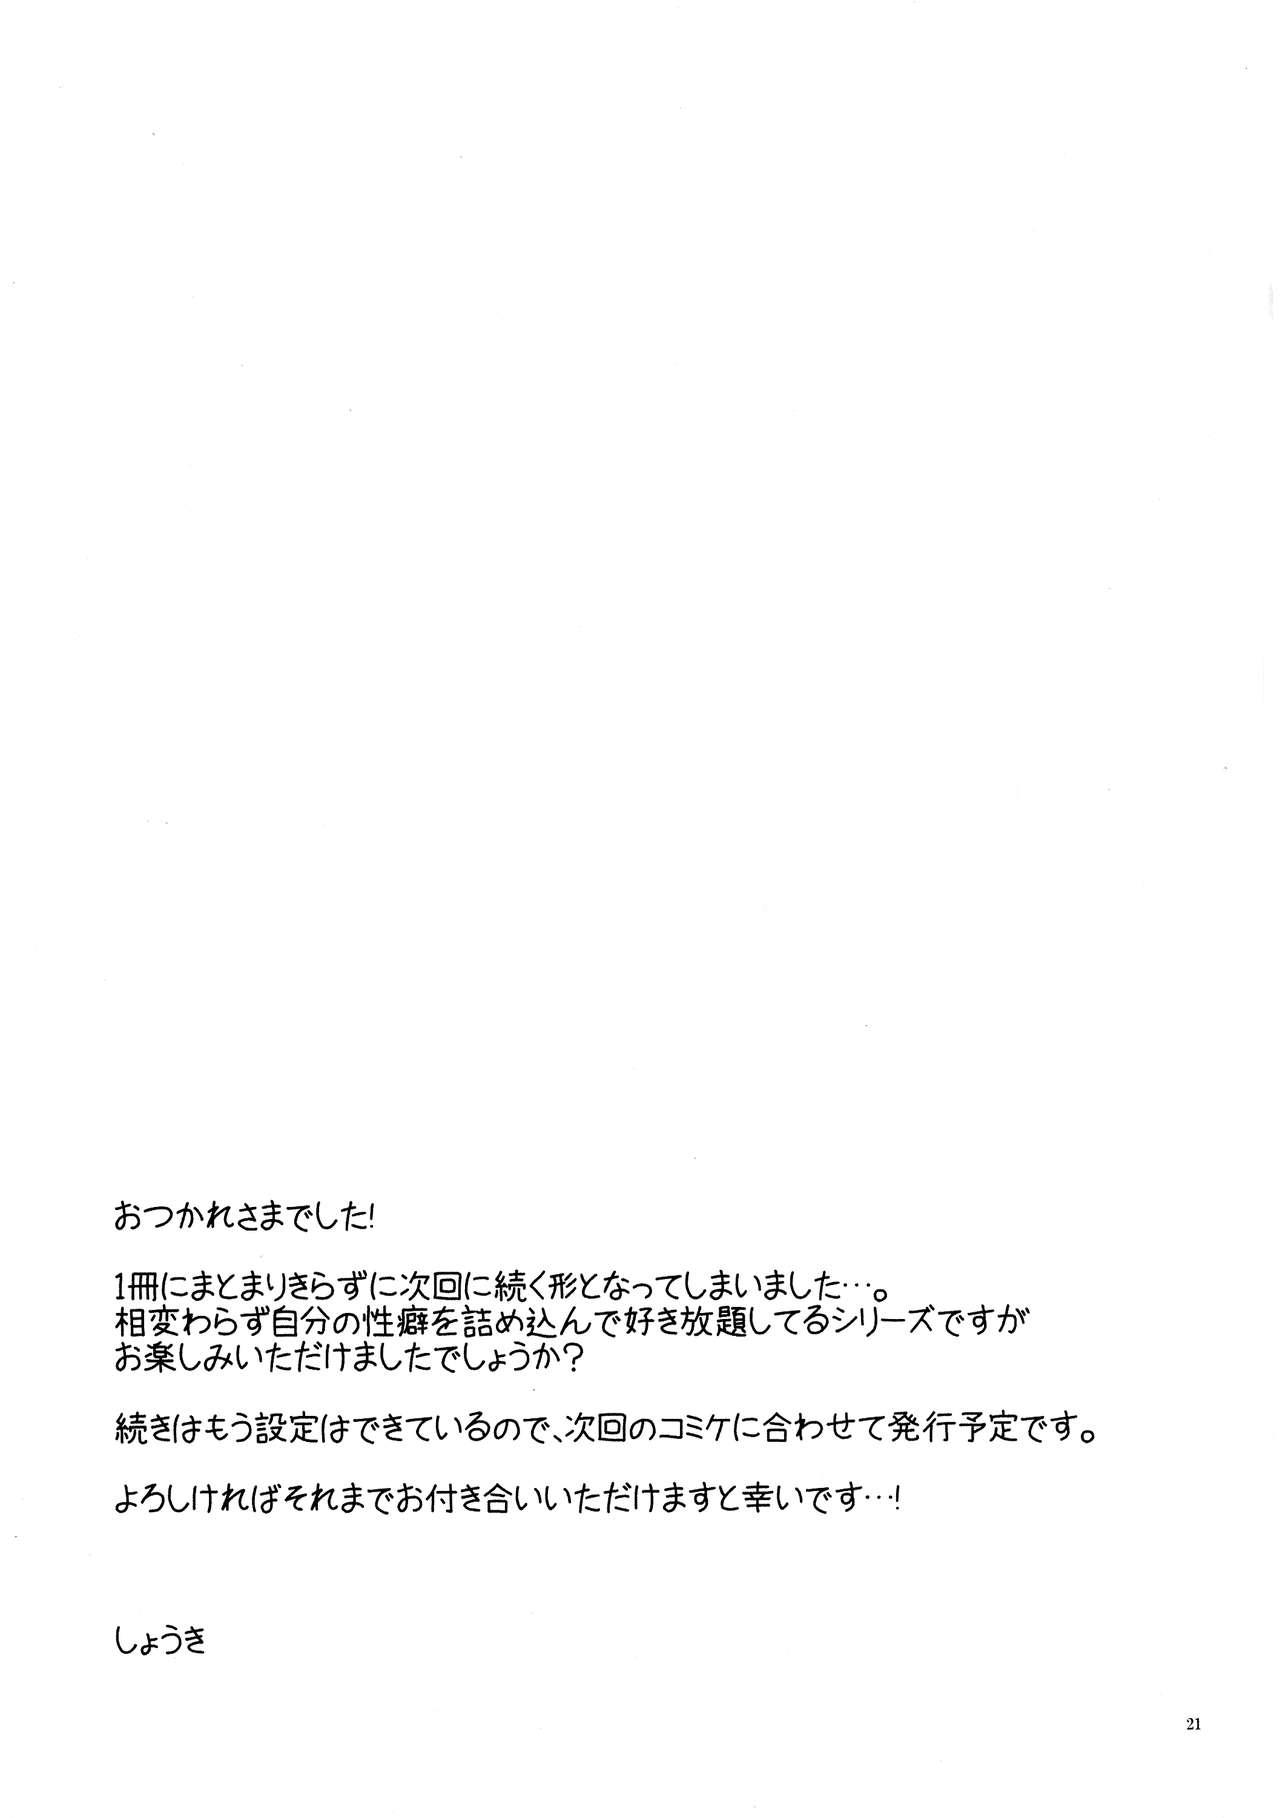 Nude Kono Kyoukai ni wa Tenshi ga Iru. 3 - El shaddai Orgasmo - Page 21